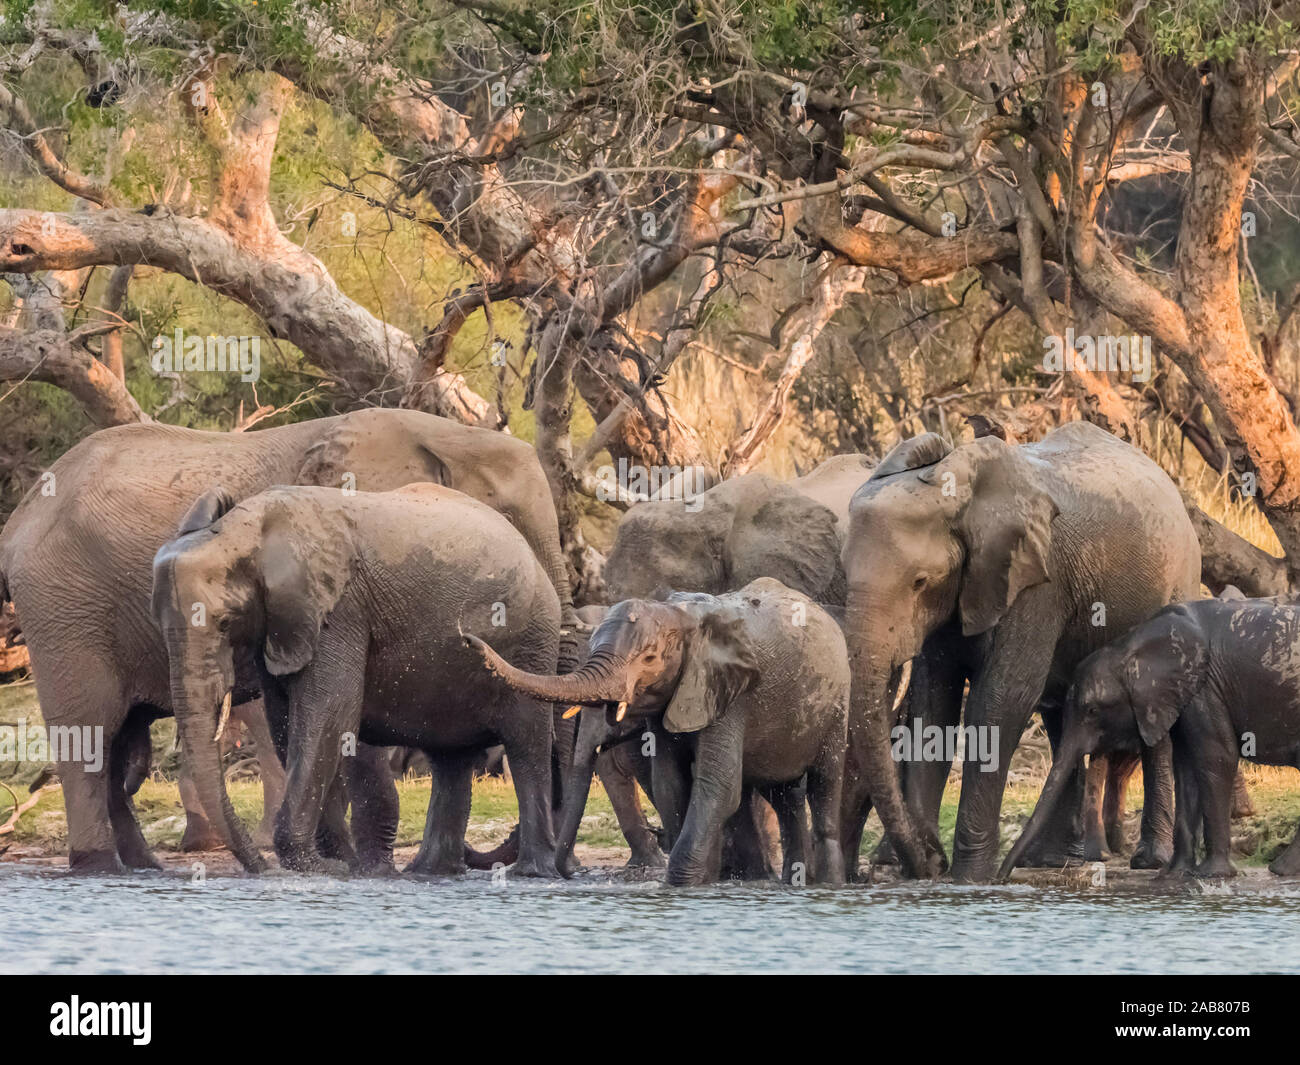 Un troupeau d'éléphants bush africain (Loxodonta africana) sur la partie supérieure de la rivière Zambezi, Parc National de Mosi-oa-Tunya, Zambie, Afrique Banque D'Images